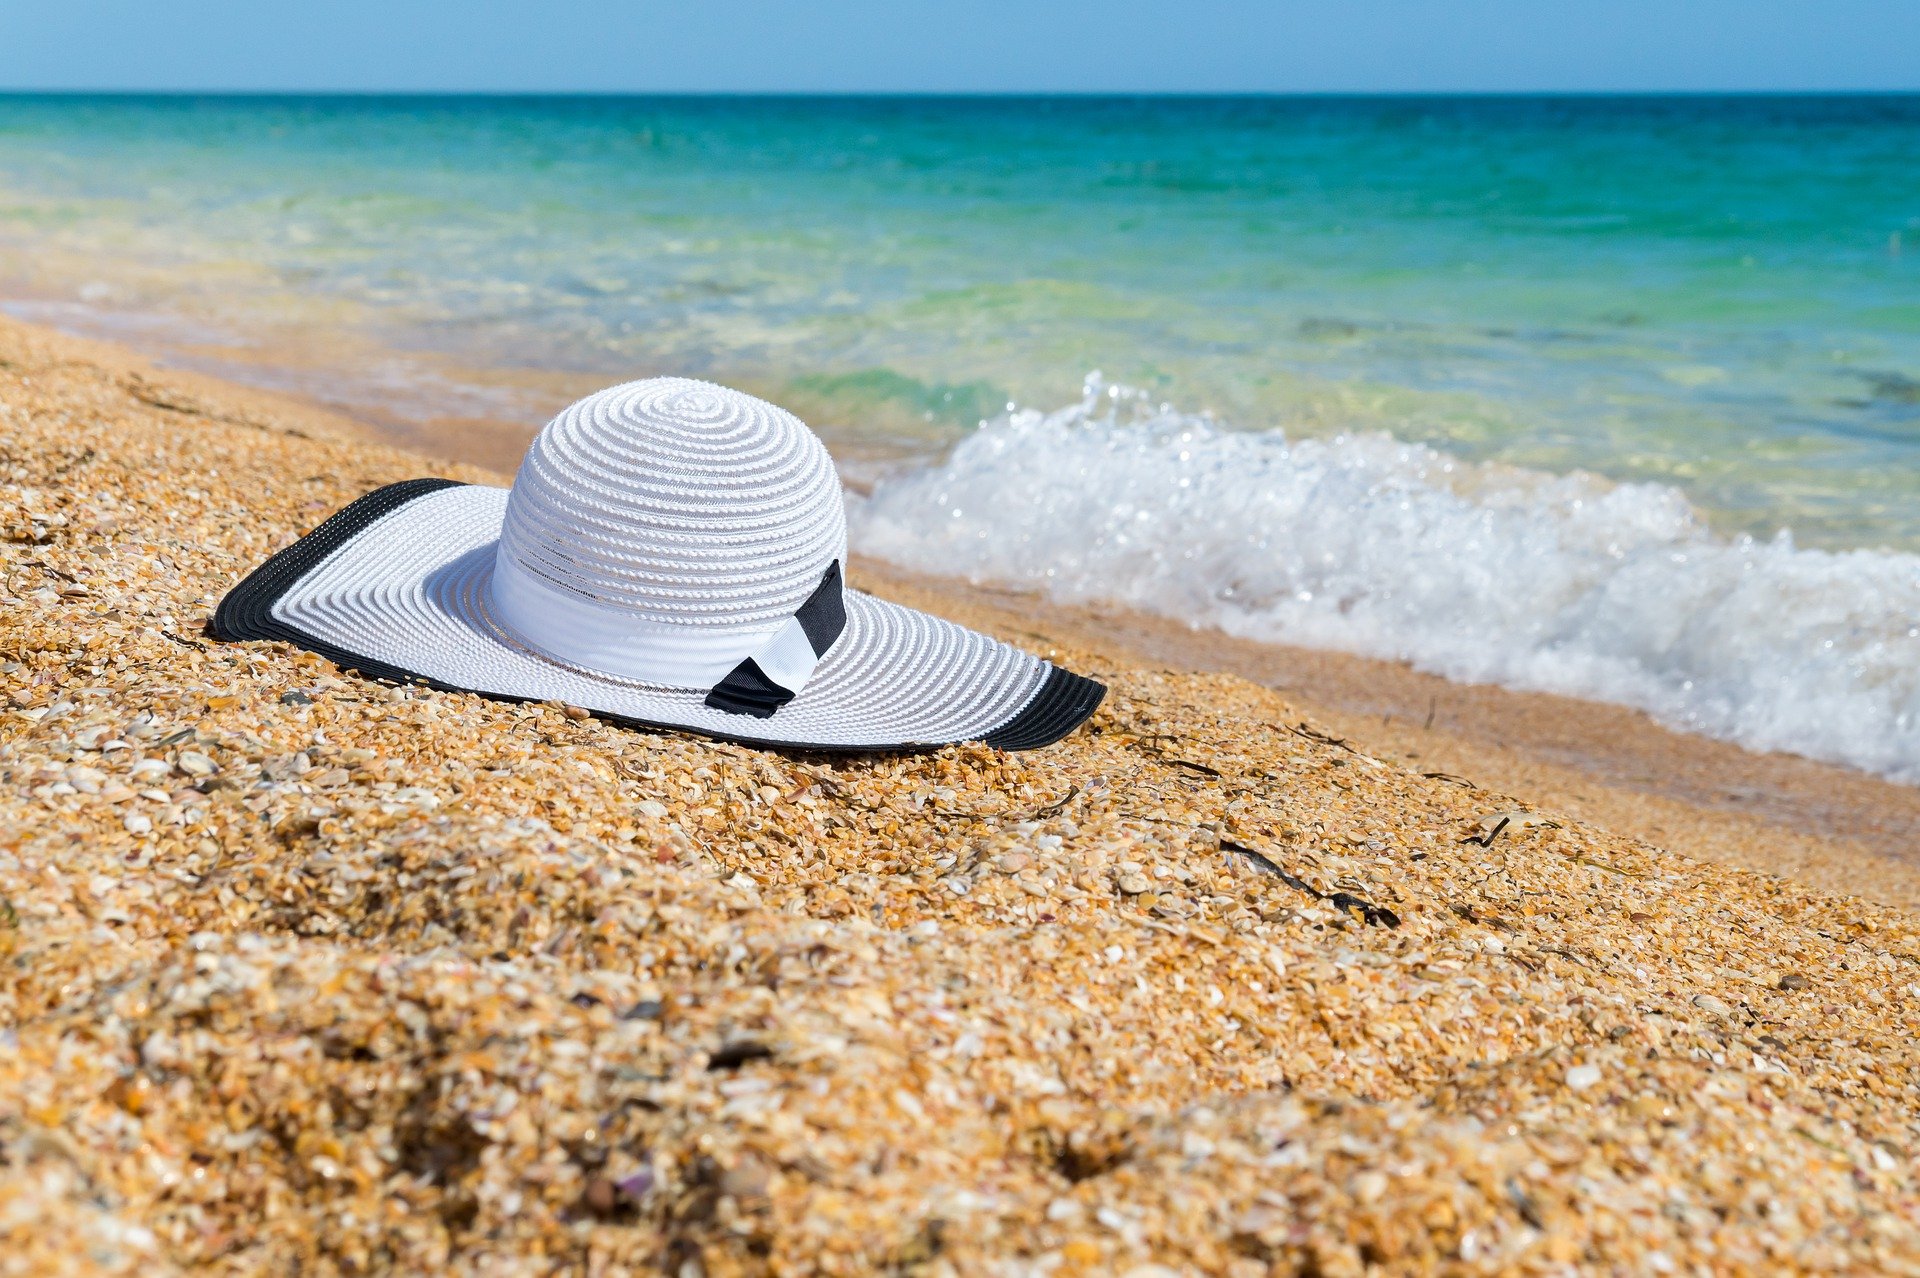 C'est une plage et au bord de l'eau de sable, il y a un chapeau blanc.